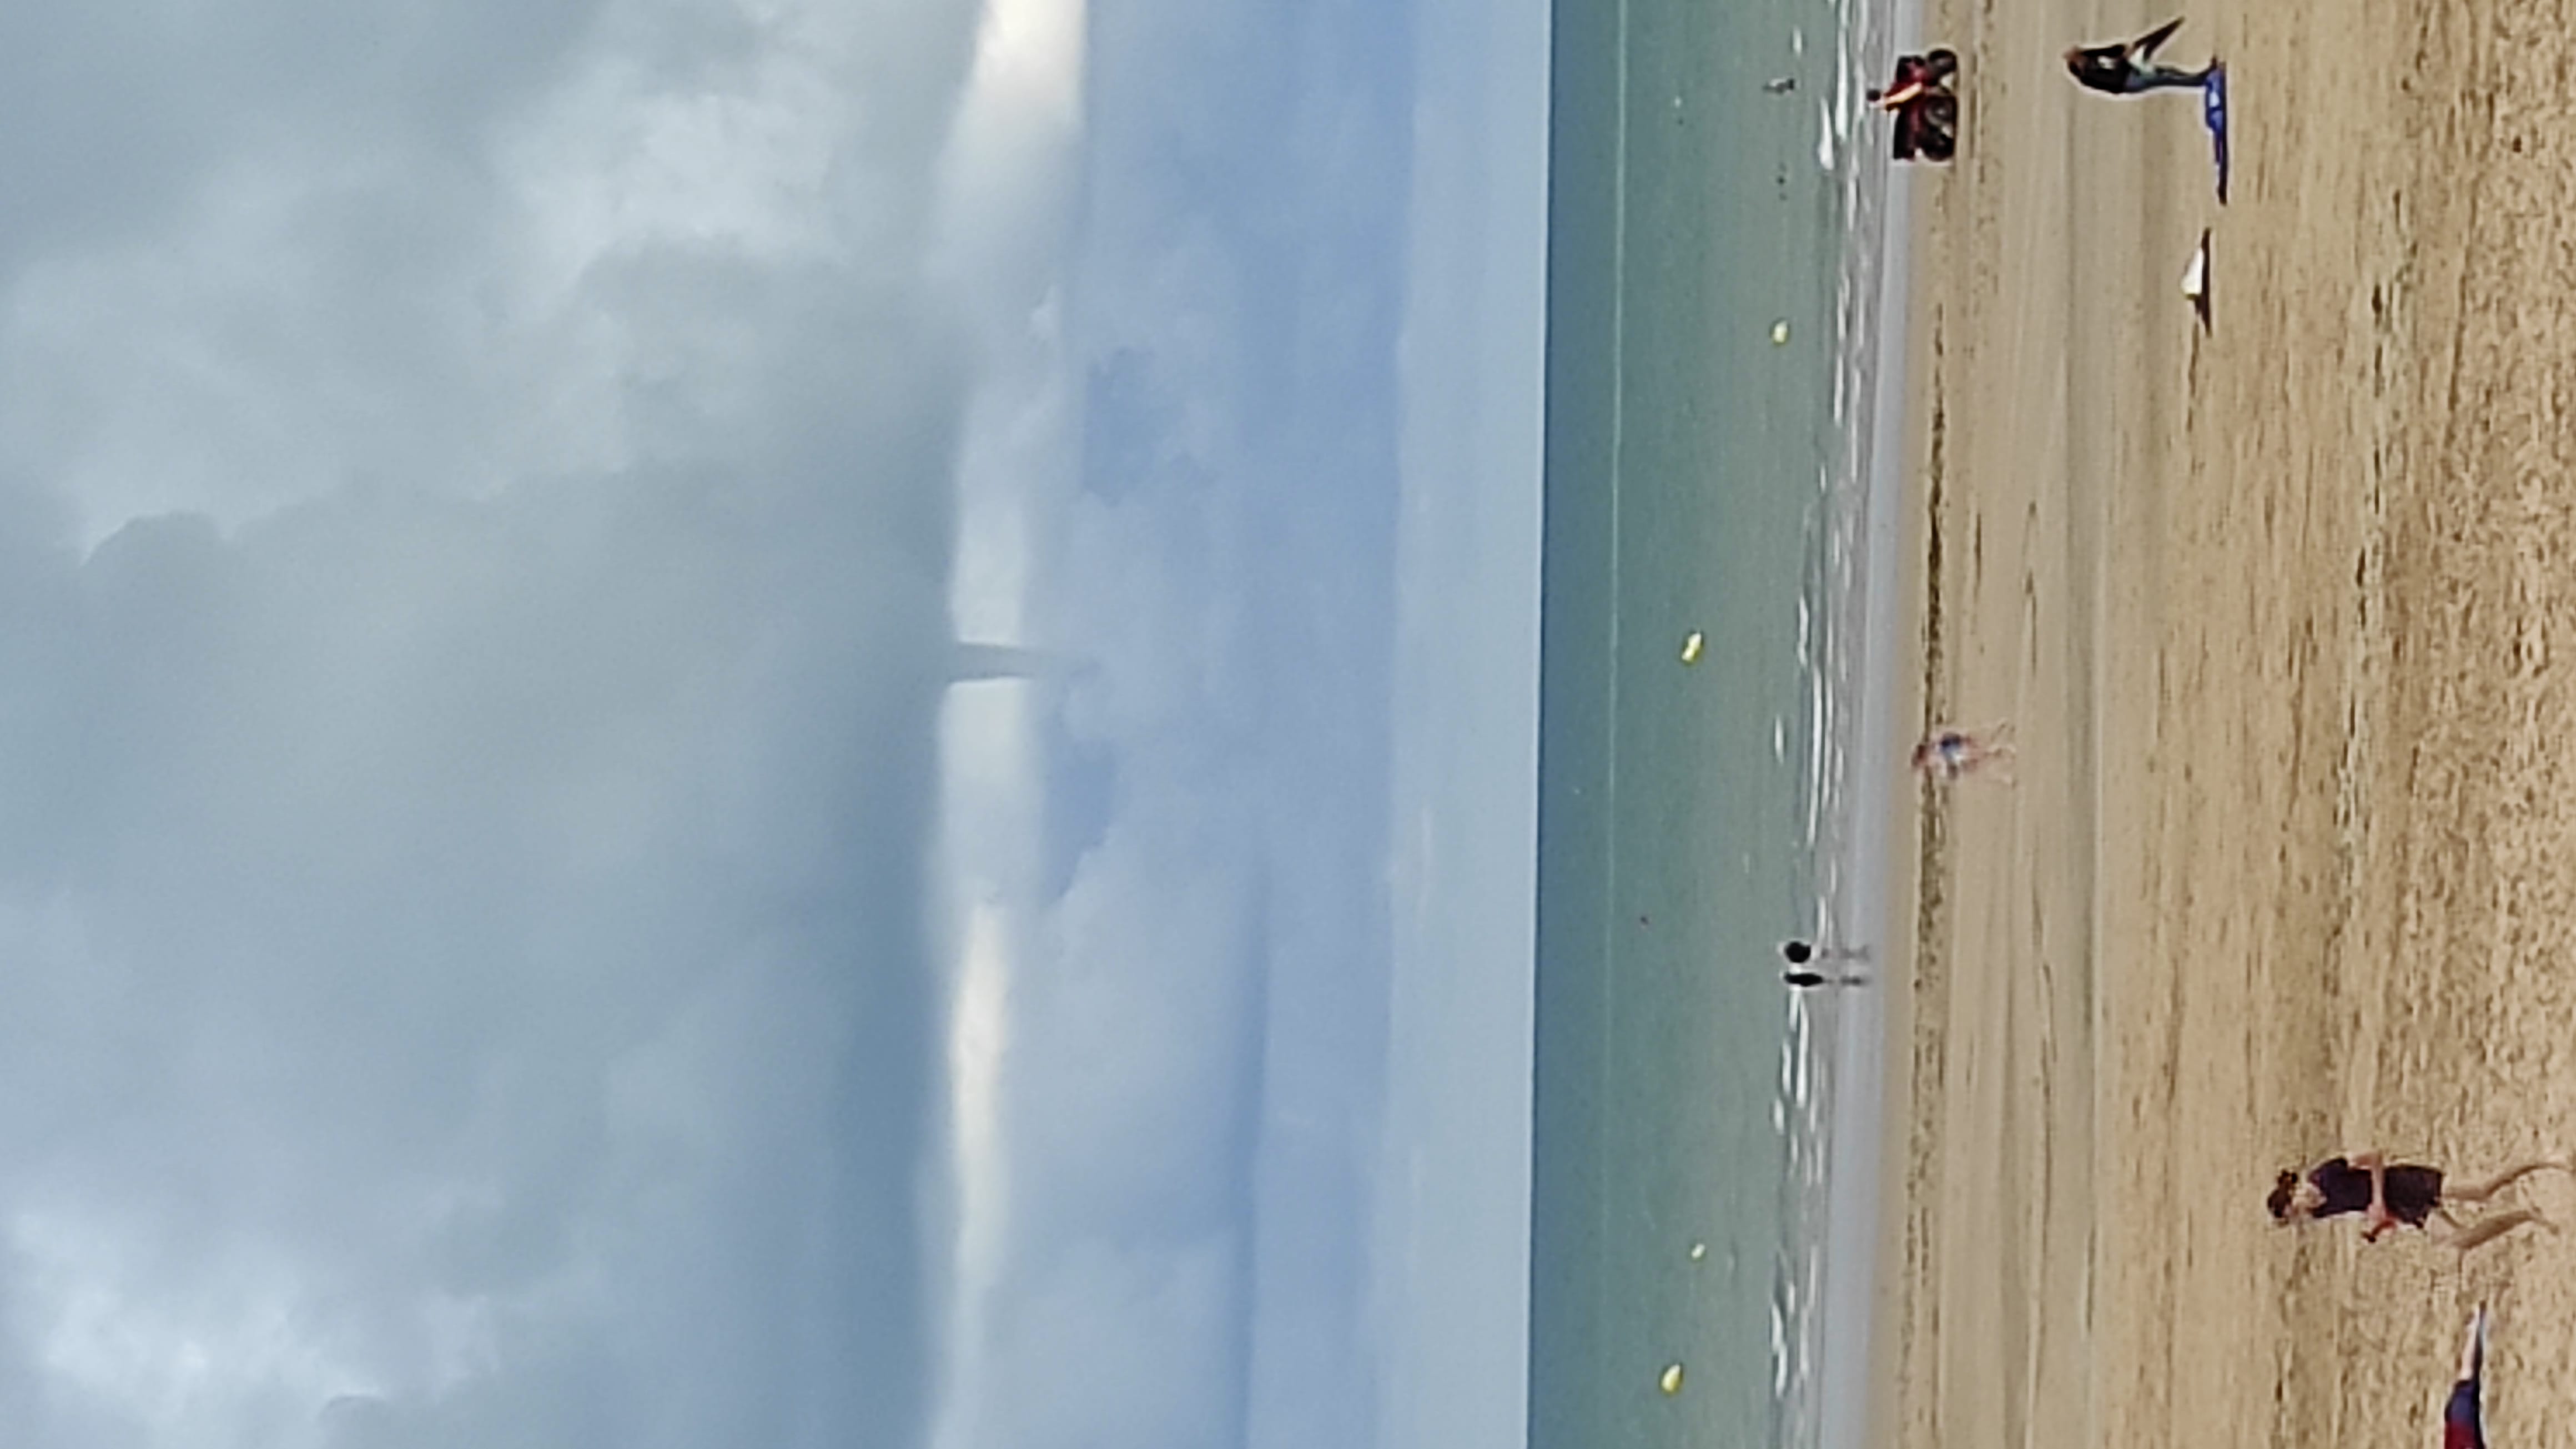 Voici une photo d'un tuba réalisait à Saint-Jean-de-Monts le 2 août 2021 à18h34
Le temps ne sembler pas orageux, mais la surprise a été rapide En voyant ce joli tuba aux dessus de la mer. - 02/08/2021 18:34 - Jérémy Lecam